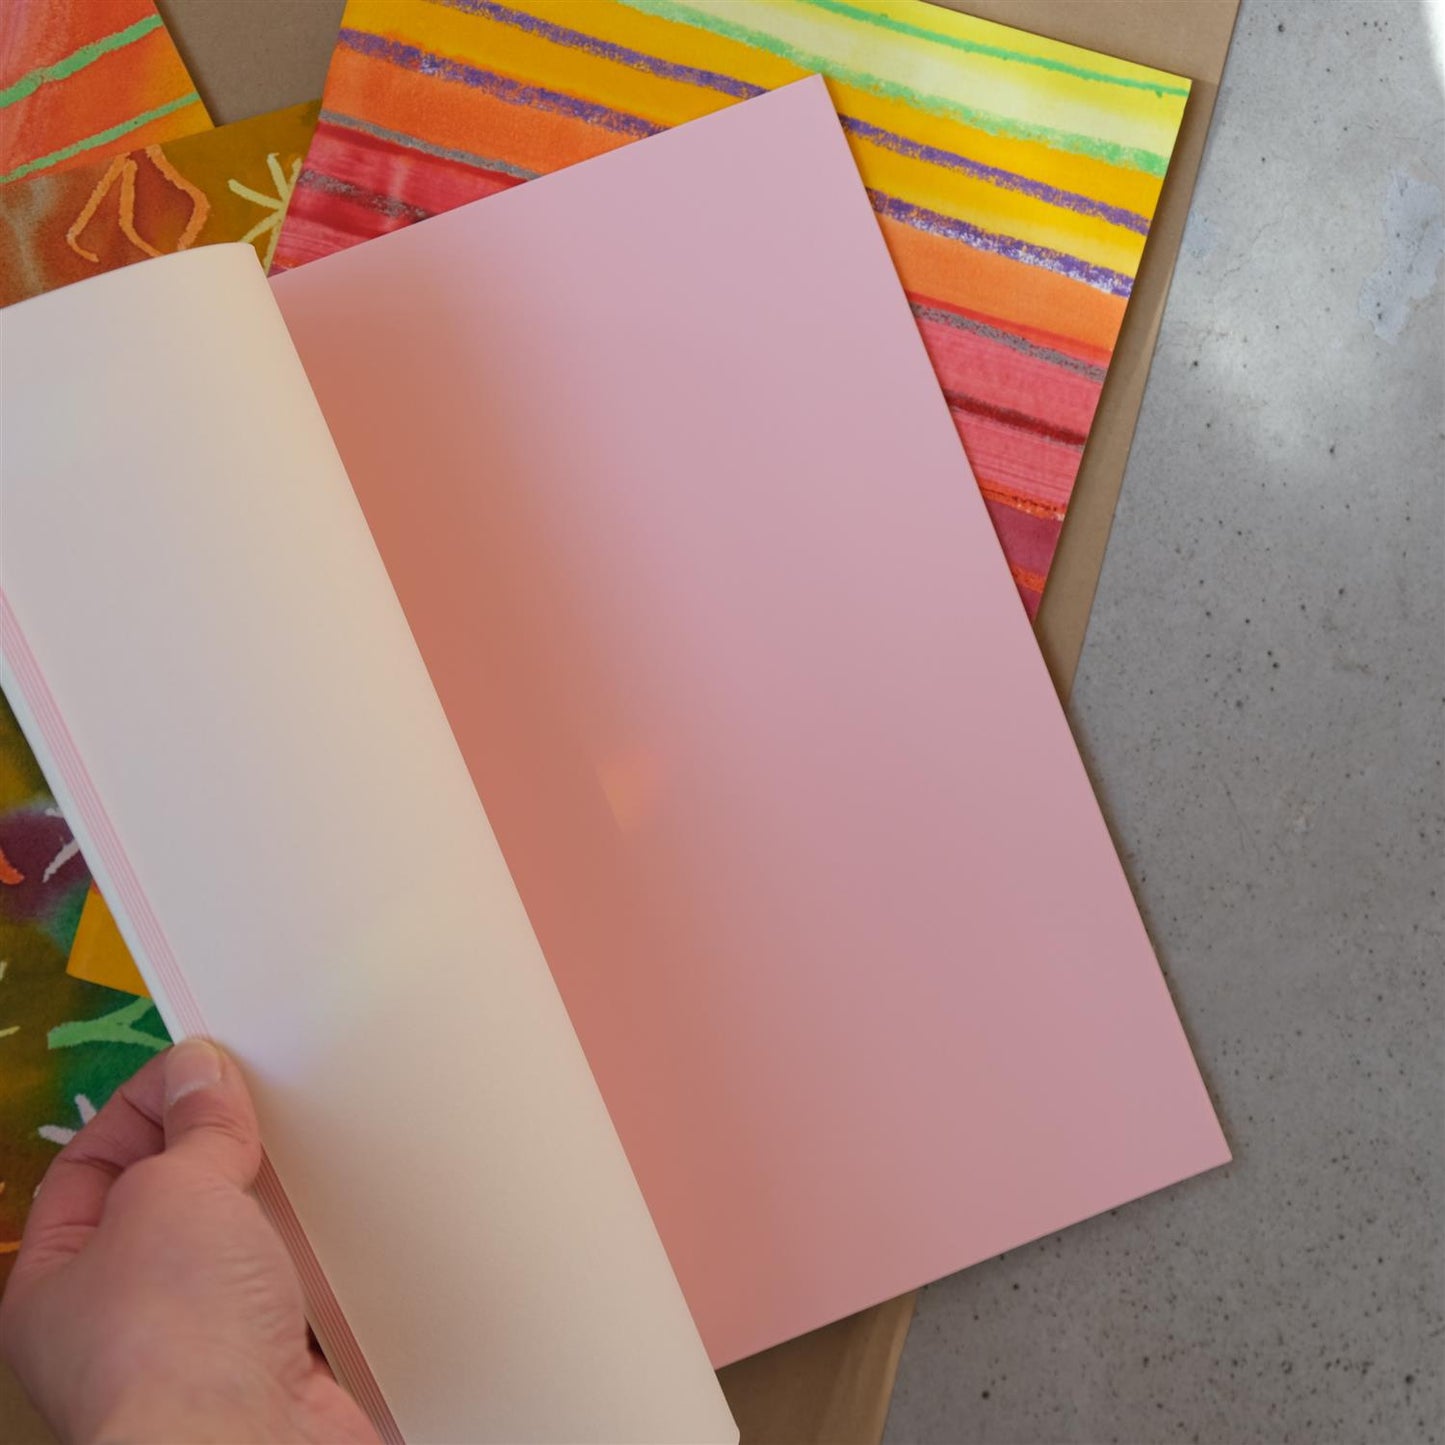 Håndmalt skissebok A4 - 4 farger mellomark